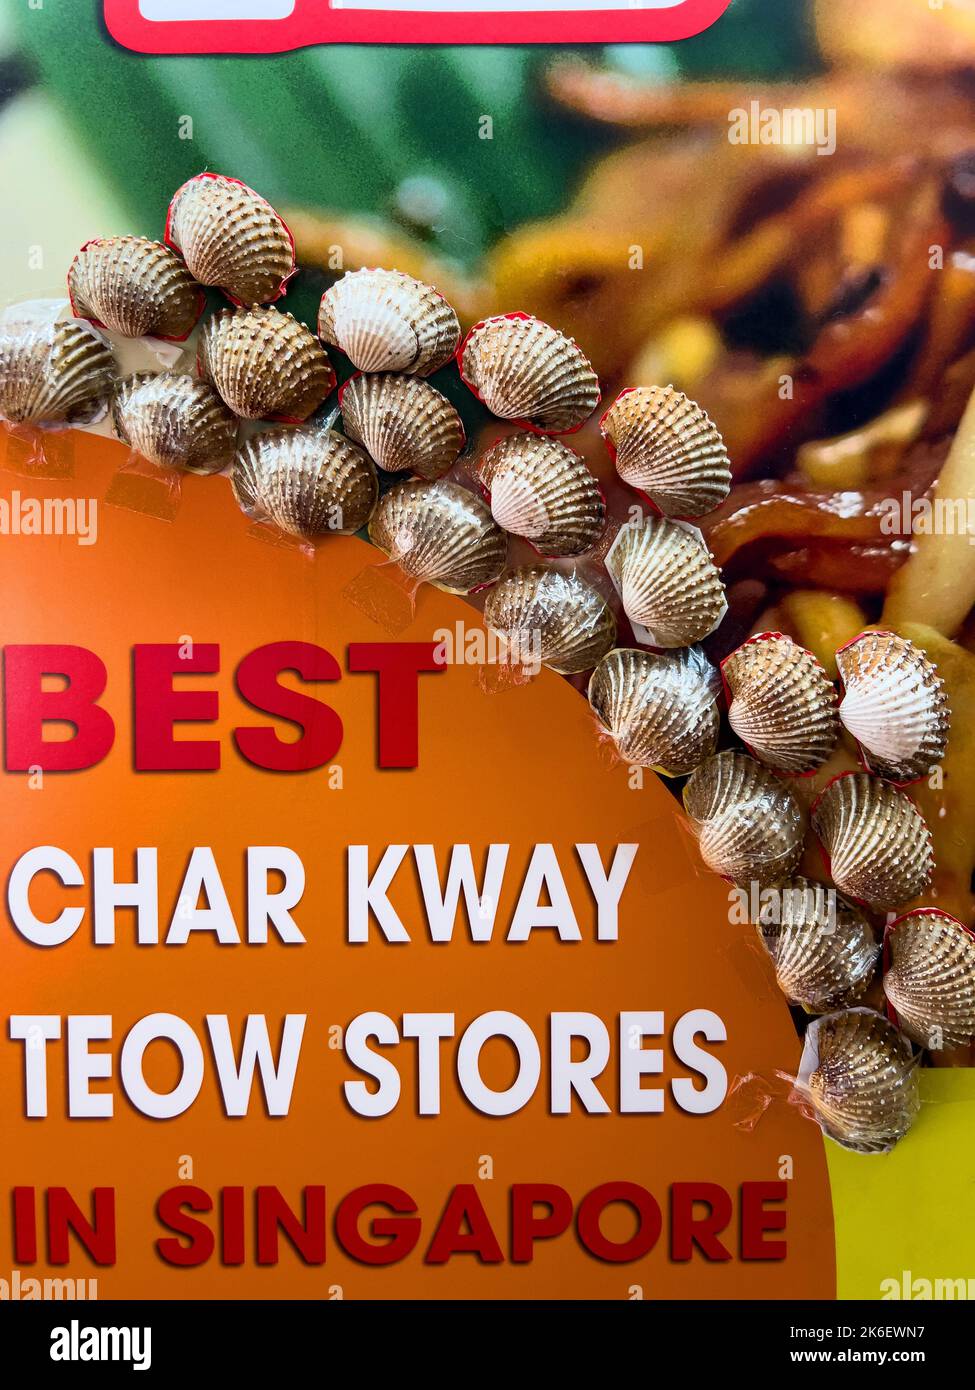 Un hawker stalla in modo creativo bastone galli guscio su esso scheda pubblicitaria per attirare i clienti a provare il loro negozio Char KWAY Teow. Singapore. Foto Stock